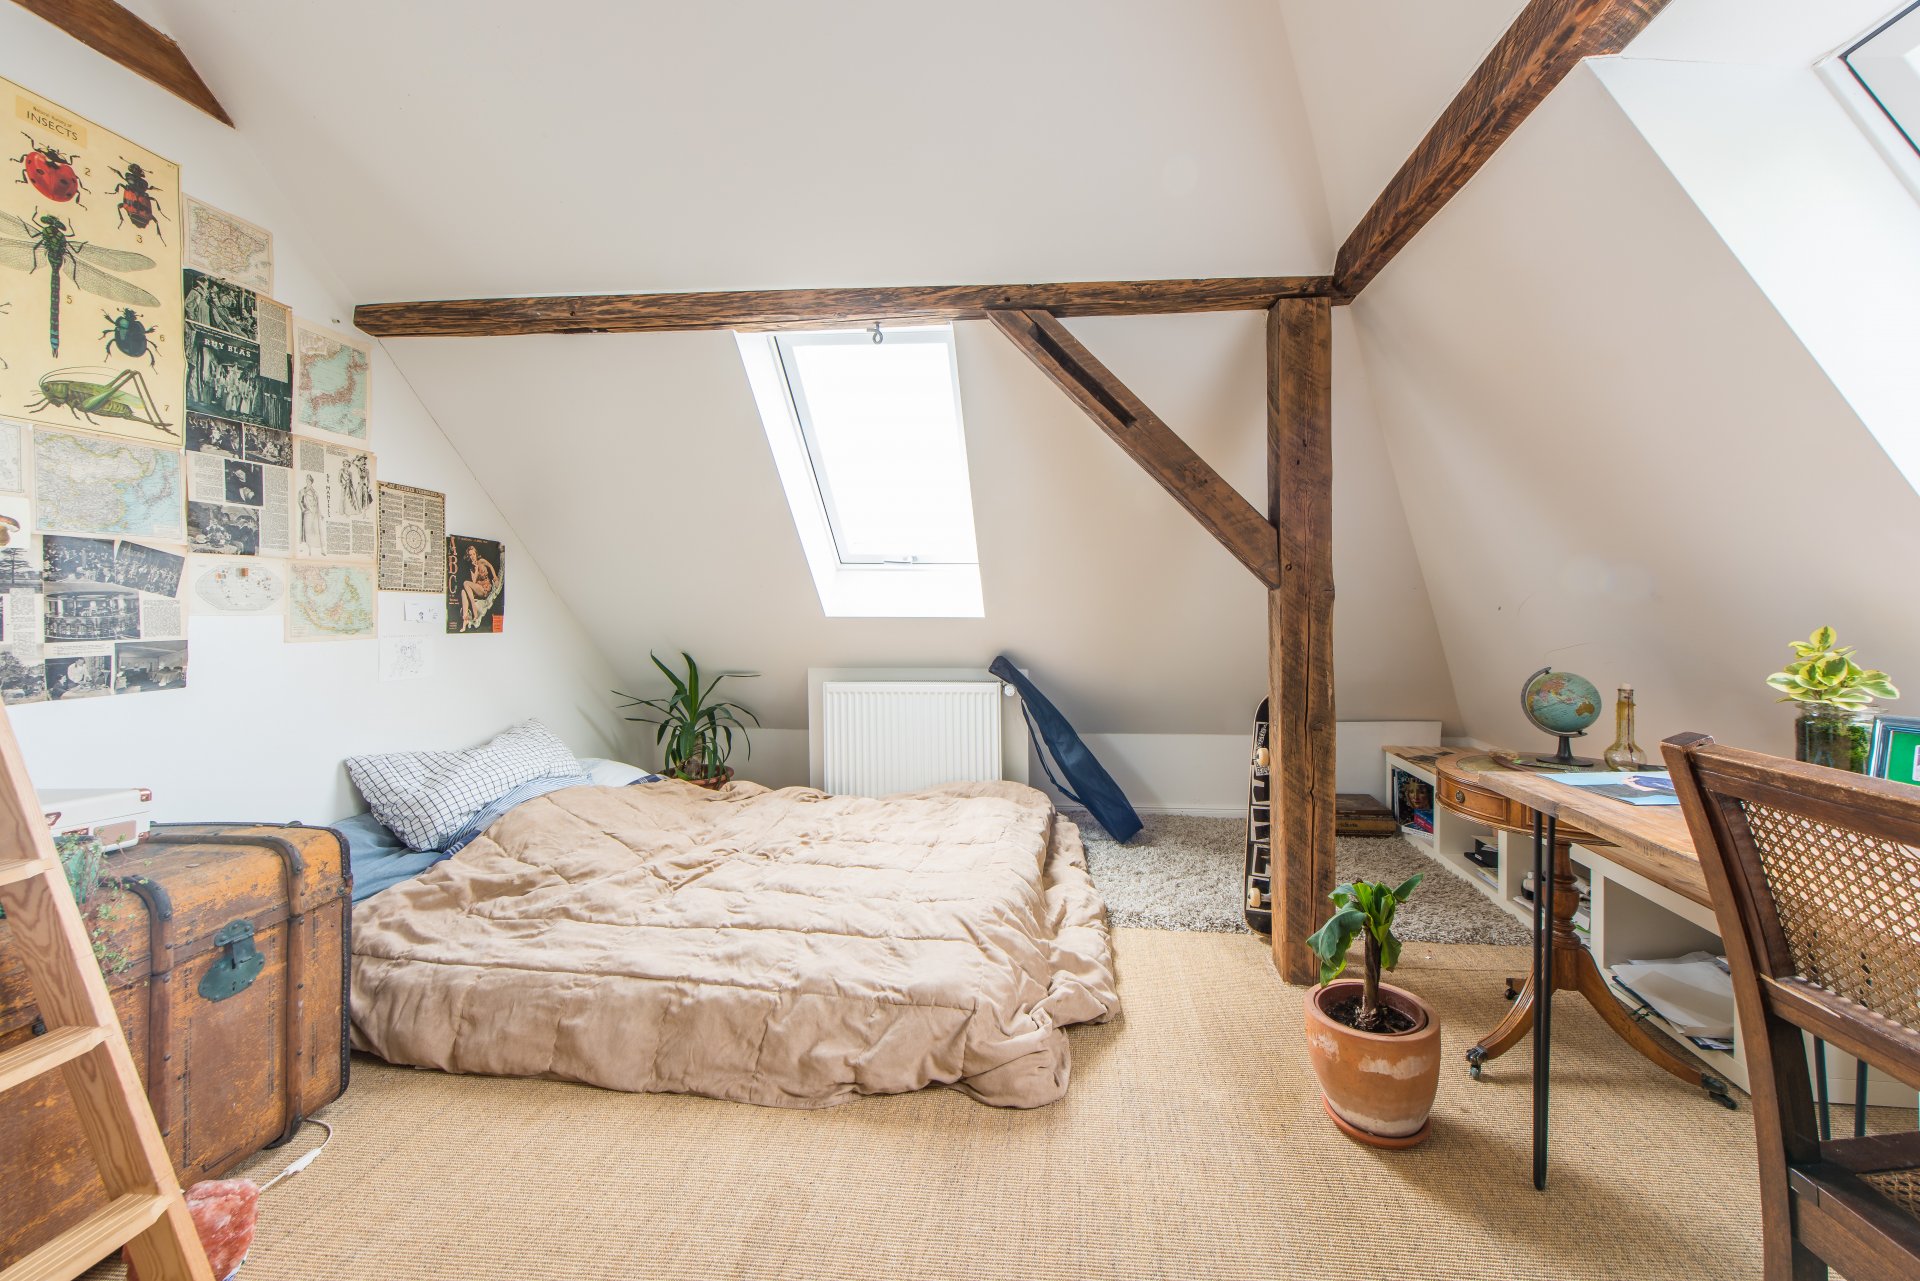 Kinderzimmer mit Schlafecke im Spitzboden - Oliver Reifferscheid - Immobilienmakler Darmstadt